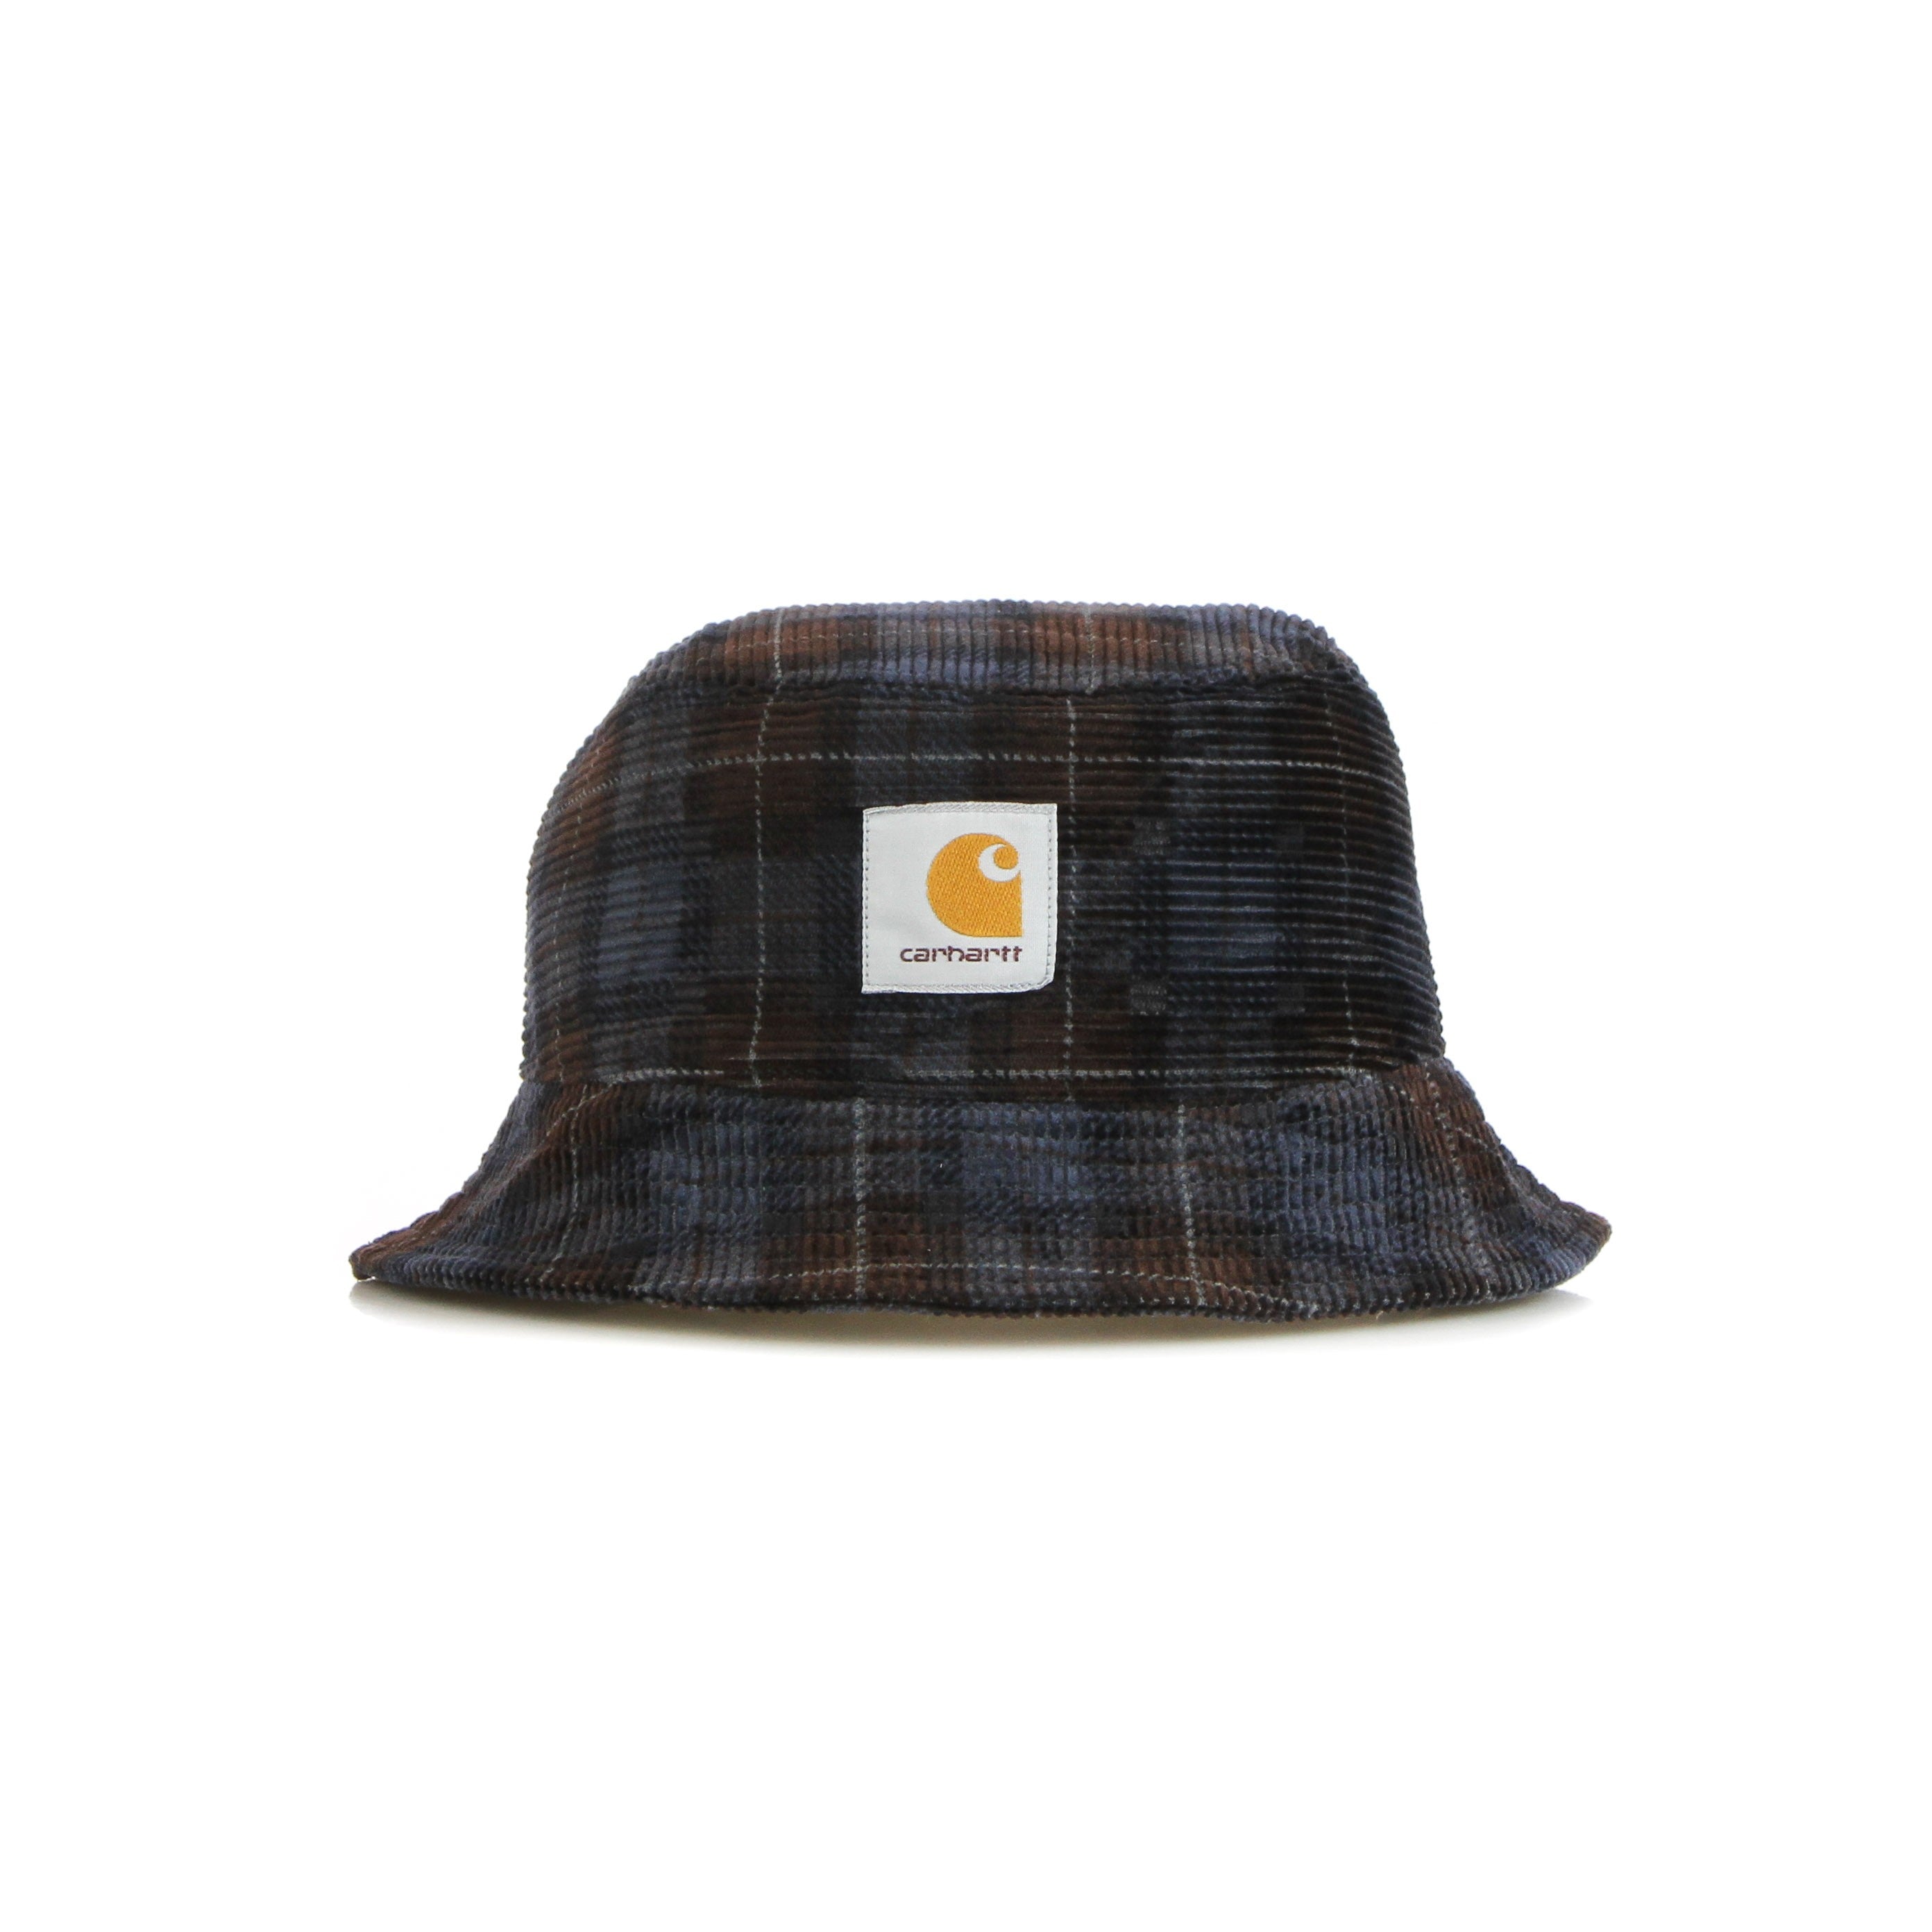 Carhartt Wip, Cappello Da Pescatore Uomo Cord Bucket Hat, Check Print/tobacco